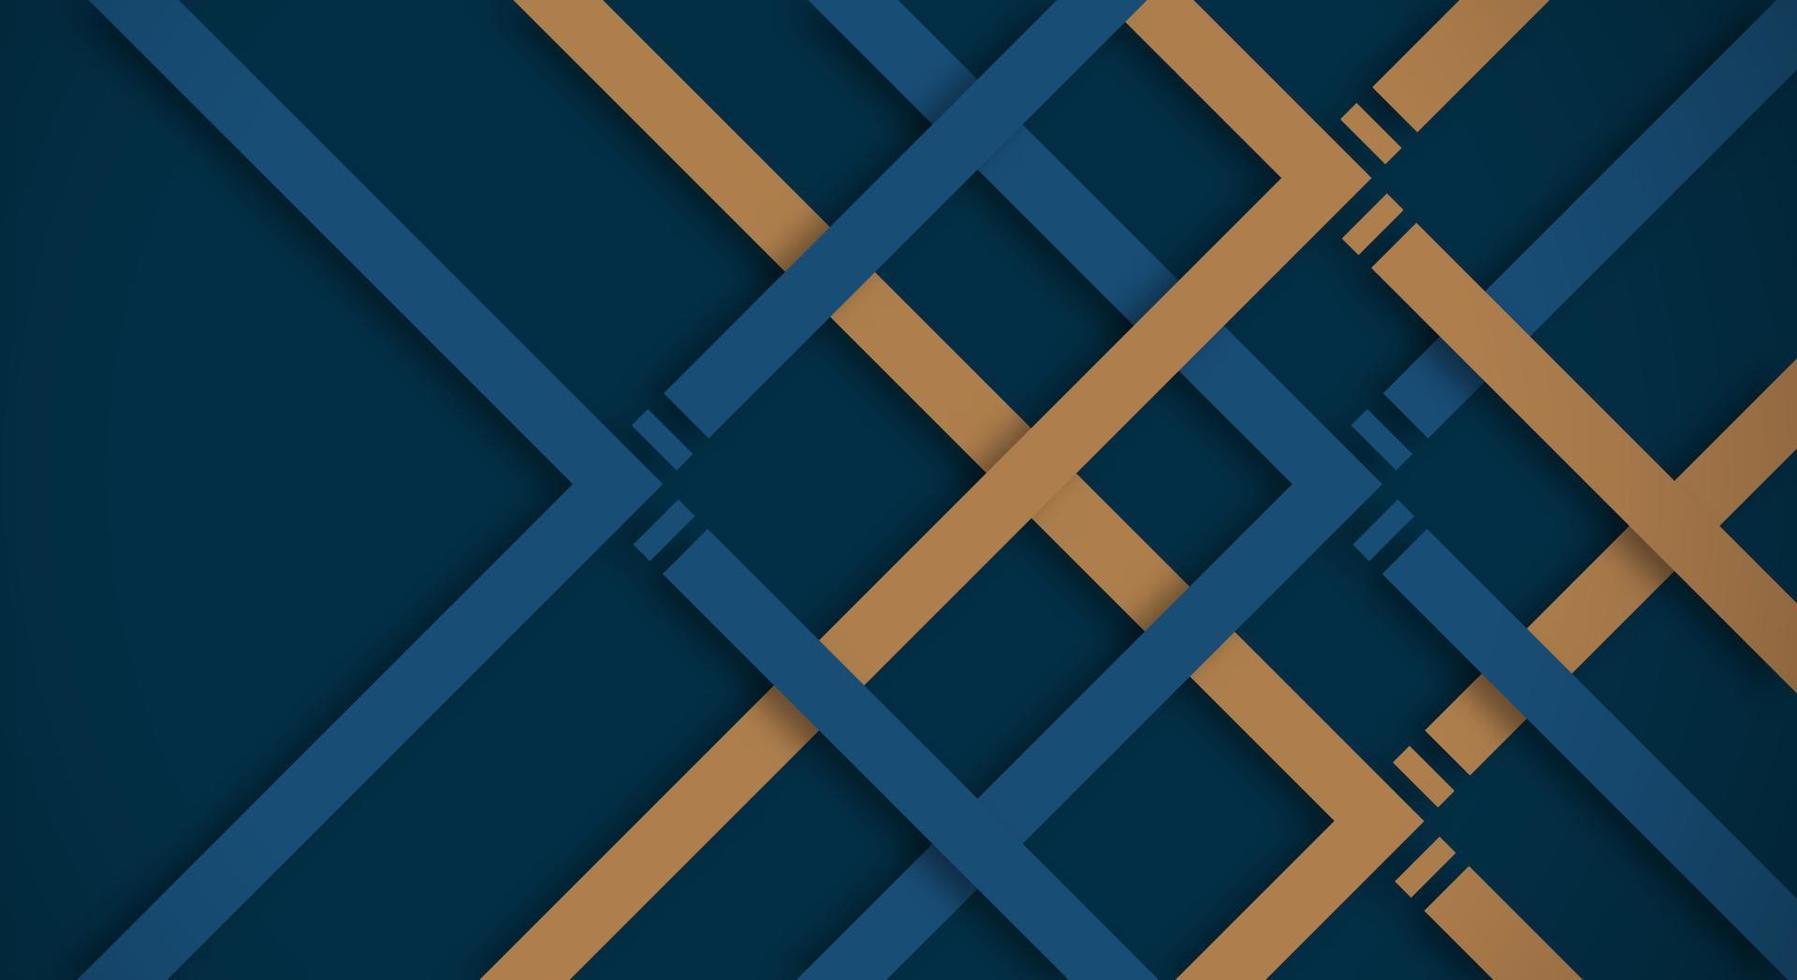 abstrakt mörk blå 3d bakgrund med guld rader papper skära stil texturerat. användbar för dekorativ webb layout, affisch, baner, företags- broschyr och seminarium mall design vektor